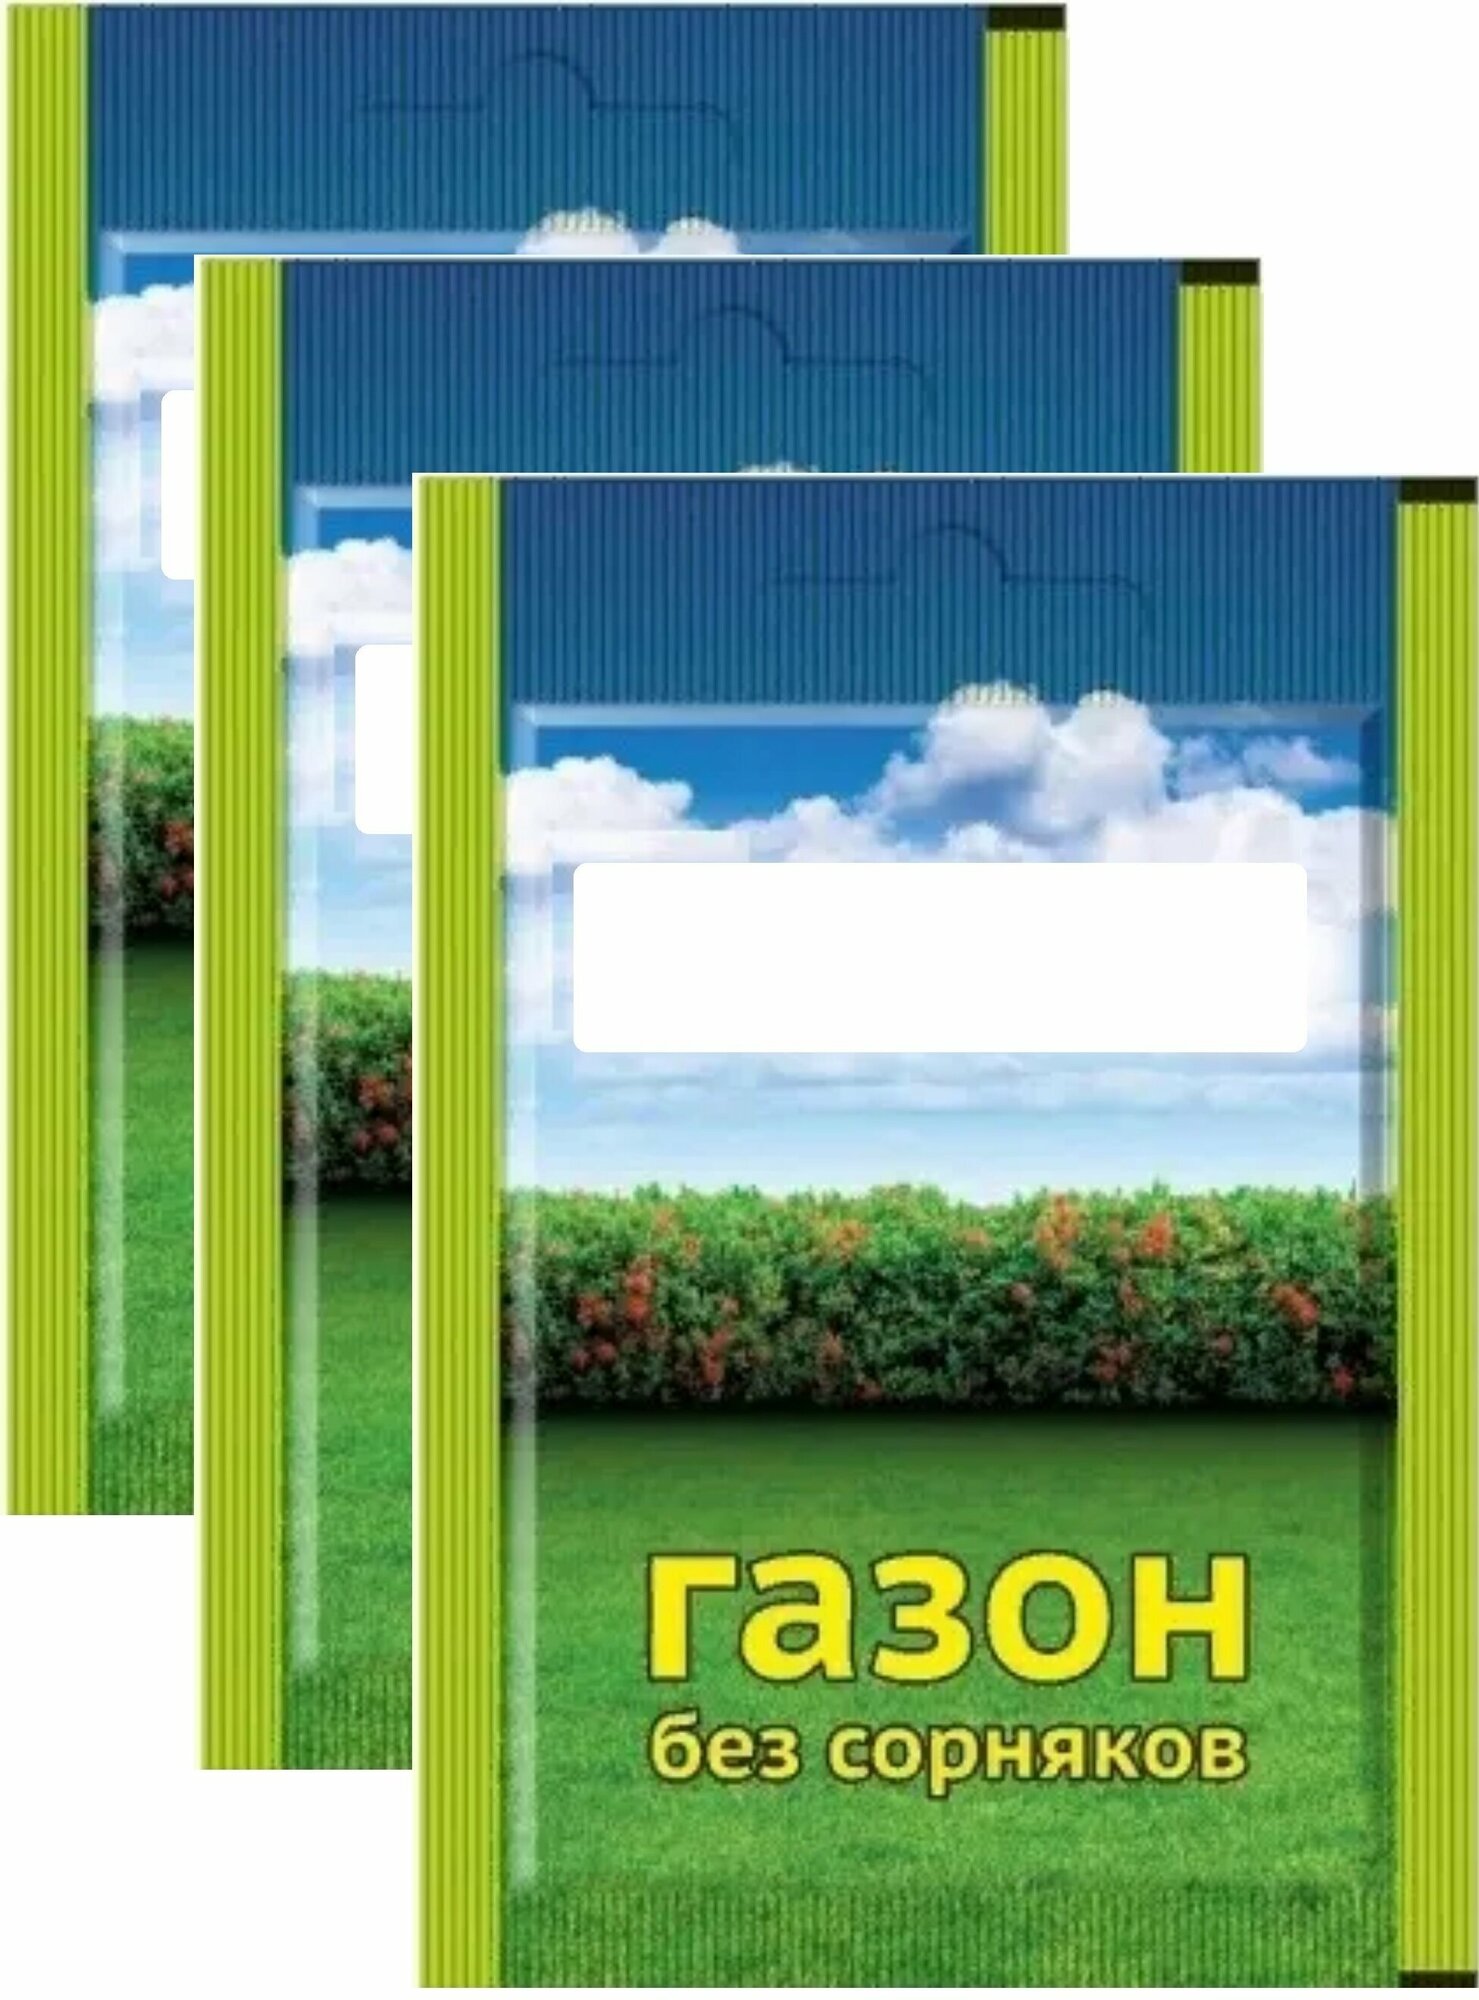 Средство от сорняков на газонах "Линтур" (3 пакета по 1,8 г). Порошок для борьбы с двудольными сорняками